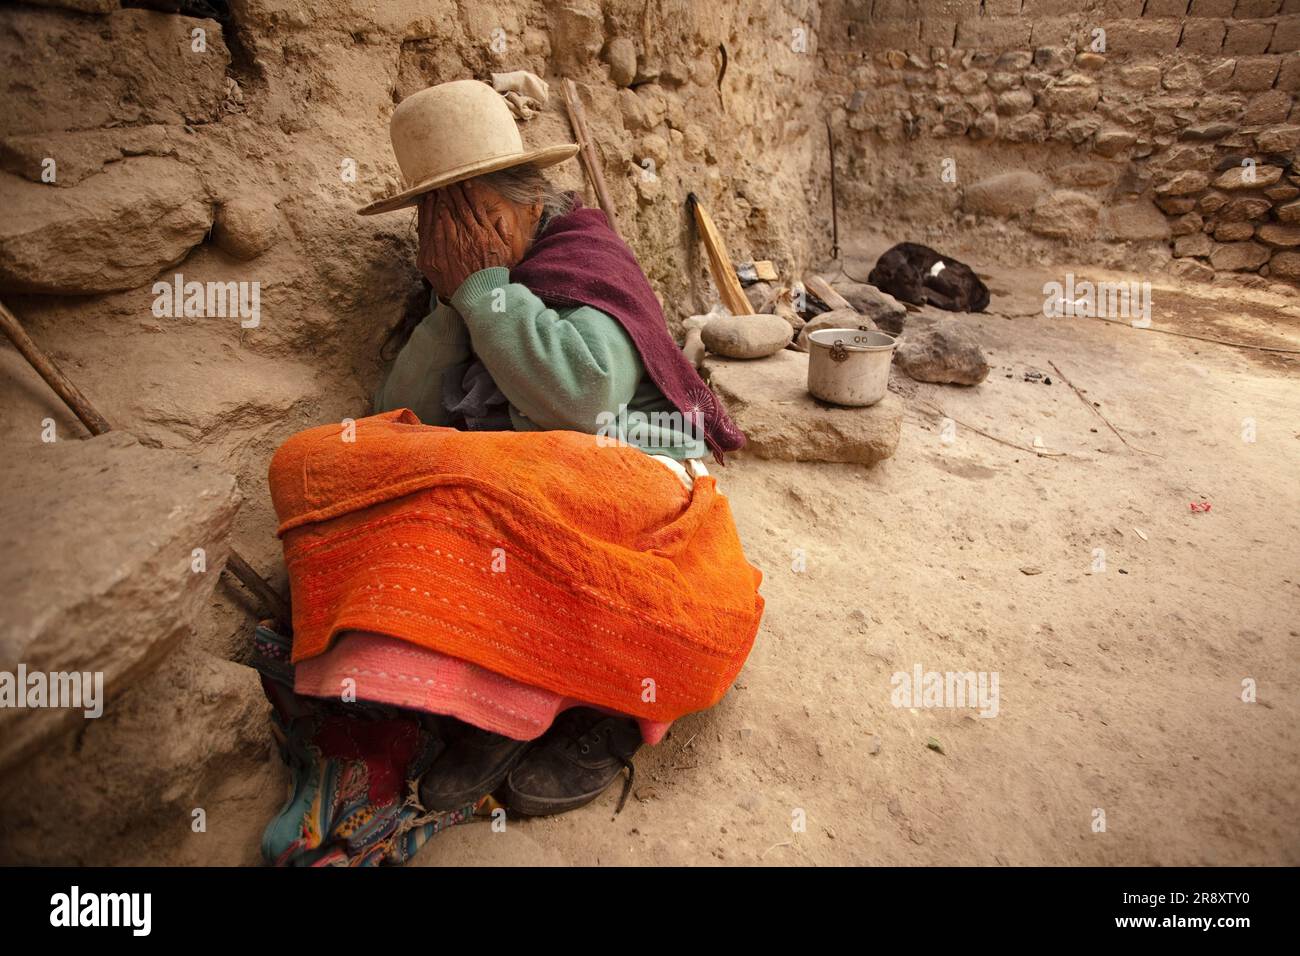 La vieille femme péruvienne se cache de la caméra tout en étant assise dans le sol. Huaraz, Pérou. Banque D'Images